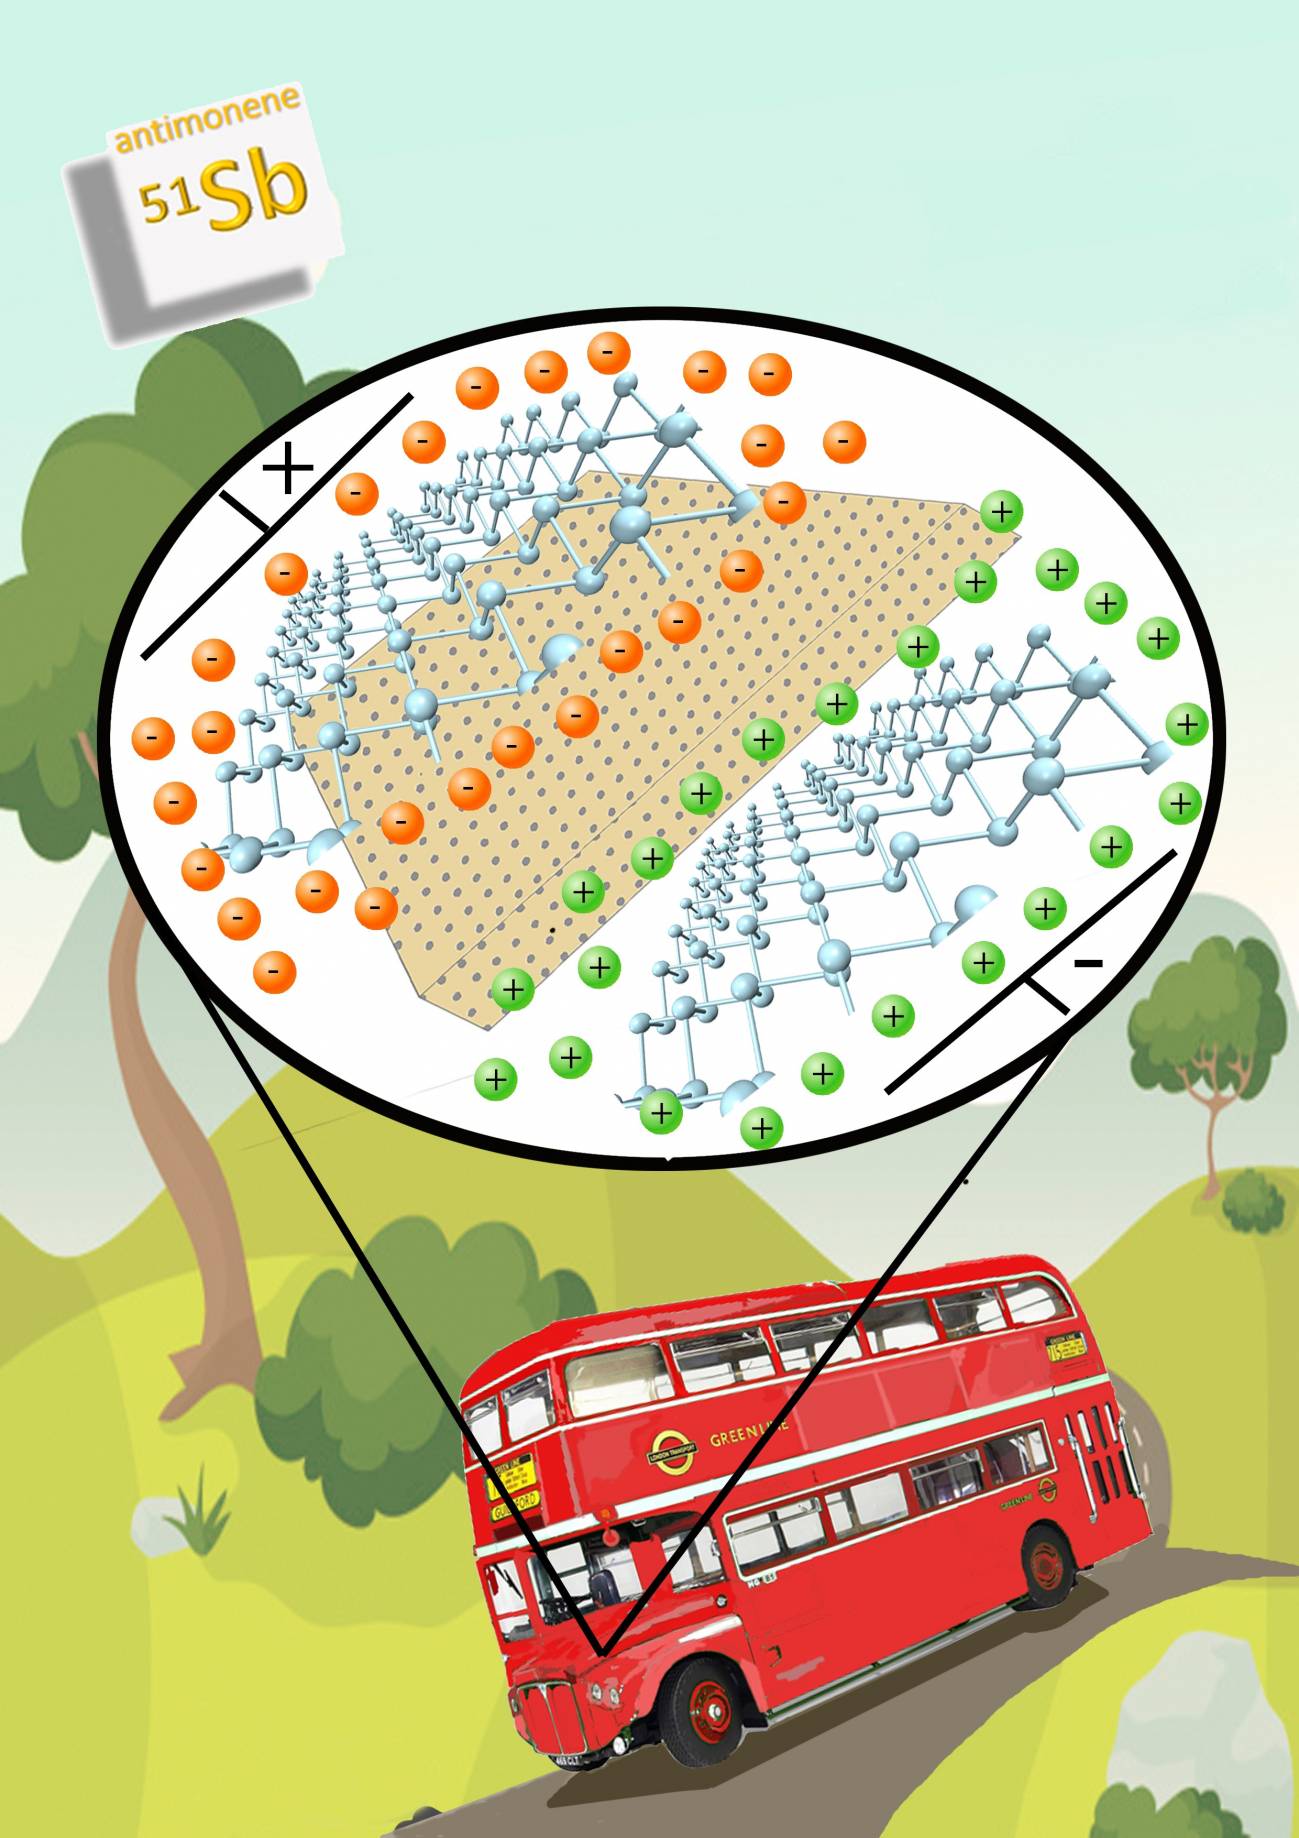 Dibujo de un autobús típico londinense cuyo motor está ampliado para mostrar un esquema de cómo funcionaría un supercondensador fabricado con láminas de antimonene.